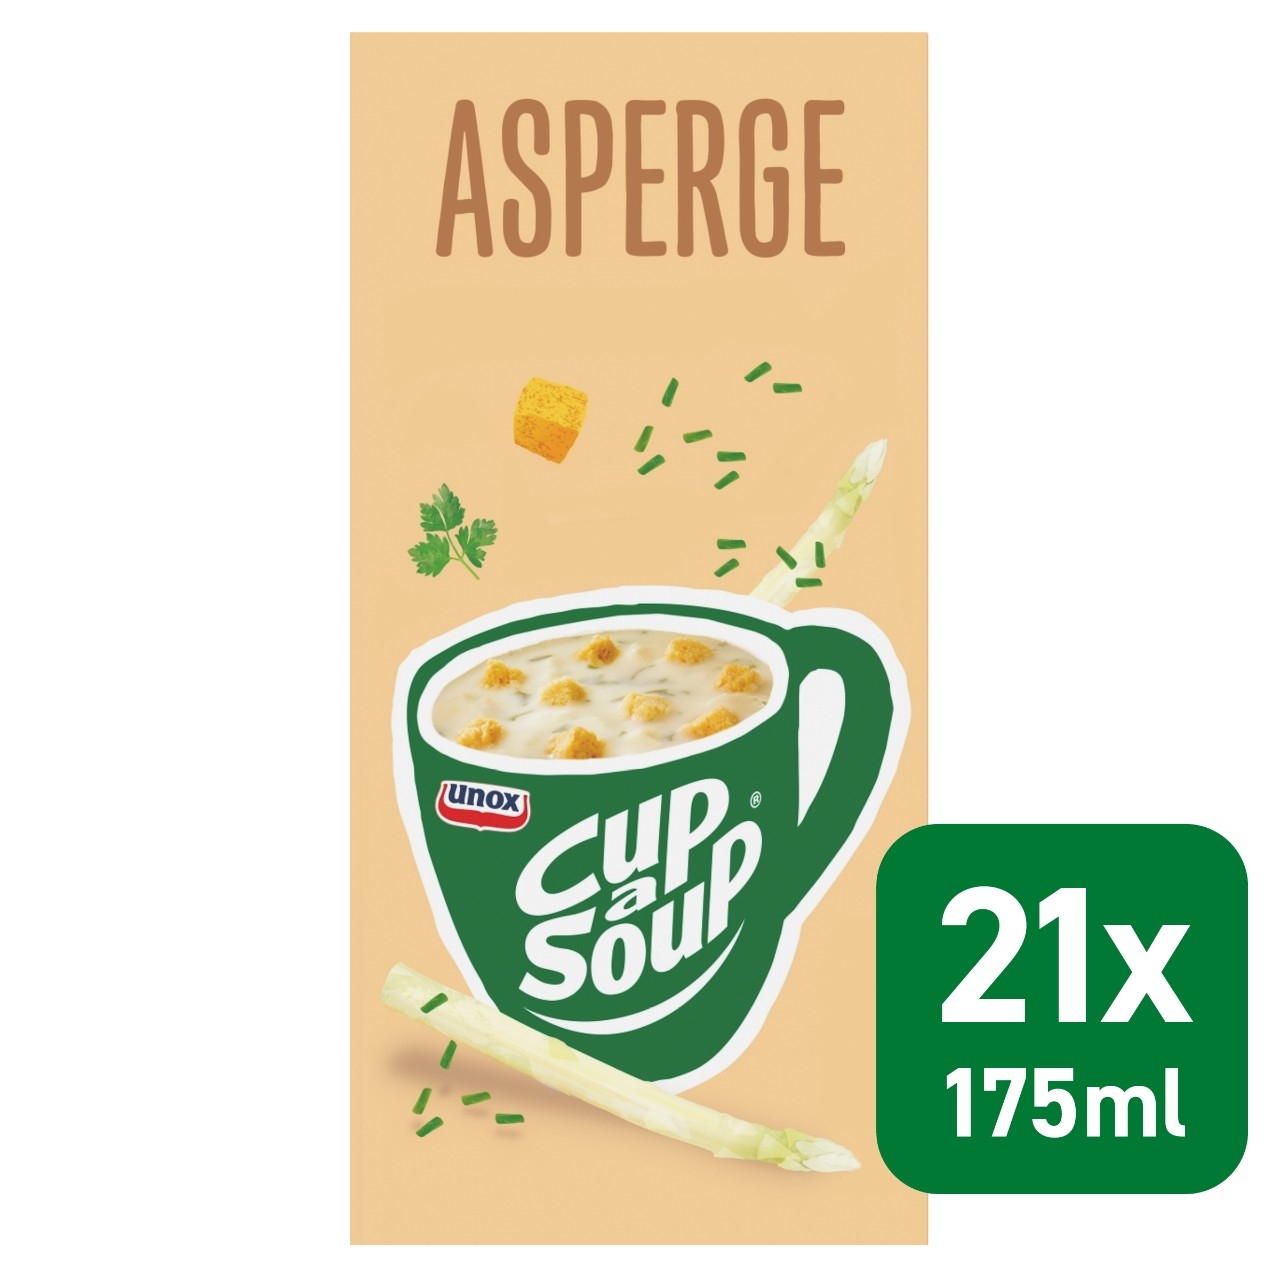 Cup a soup asperge 21 zakjes